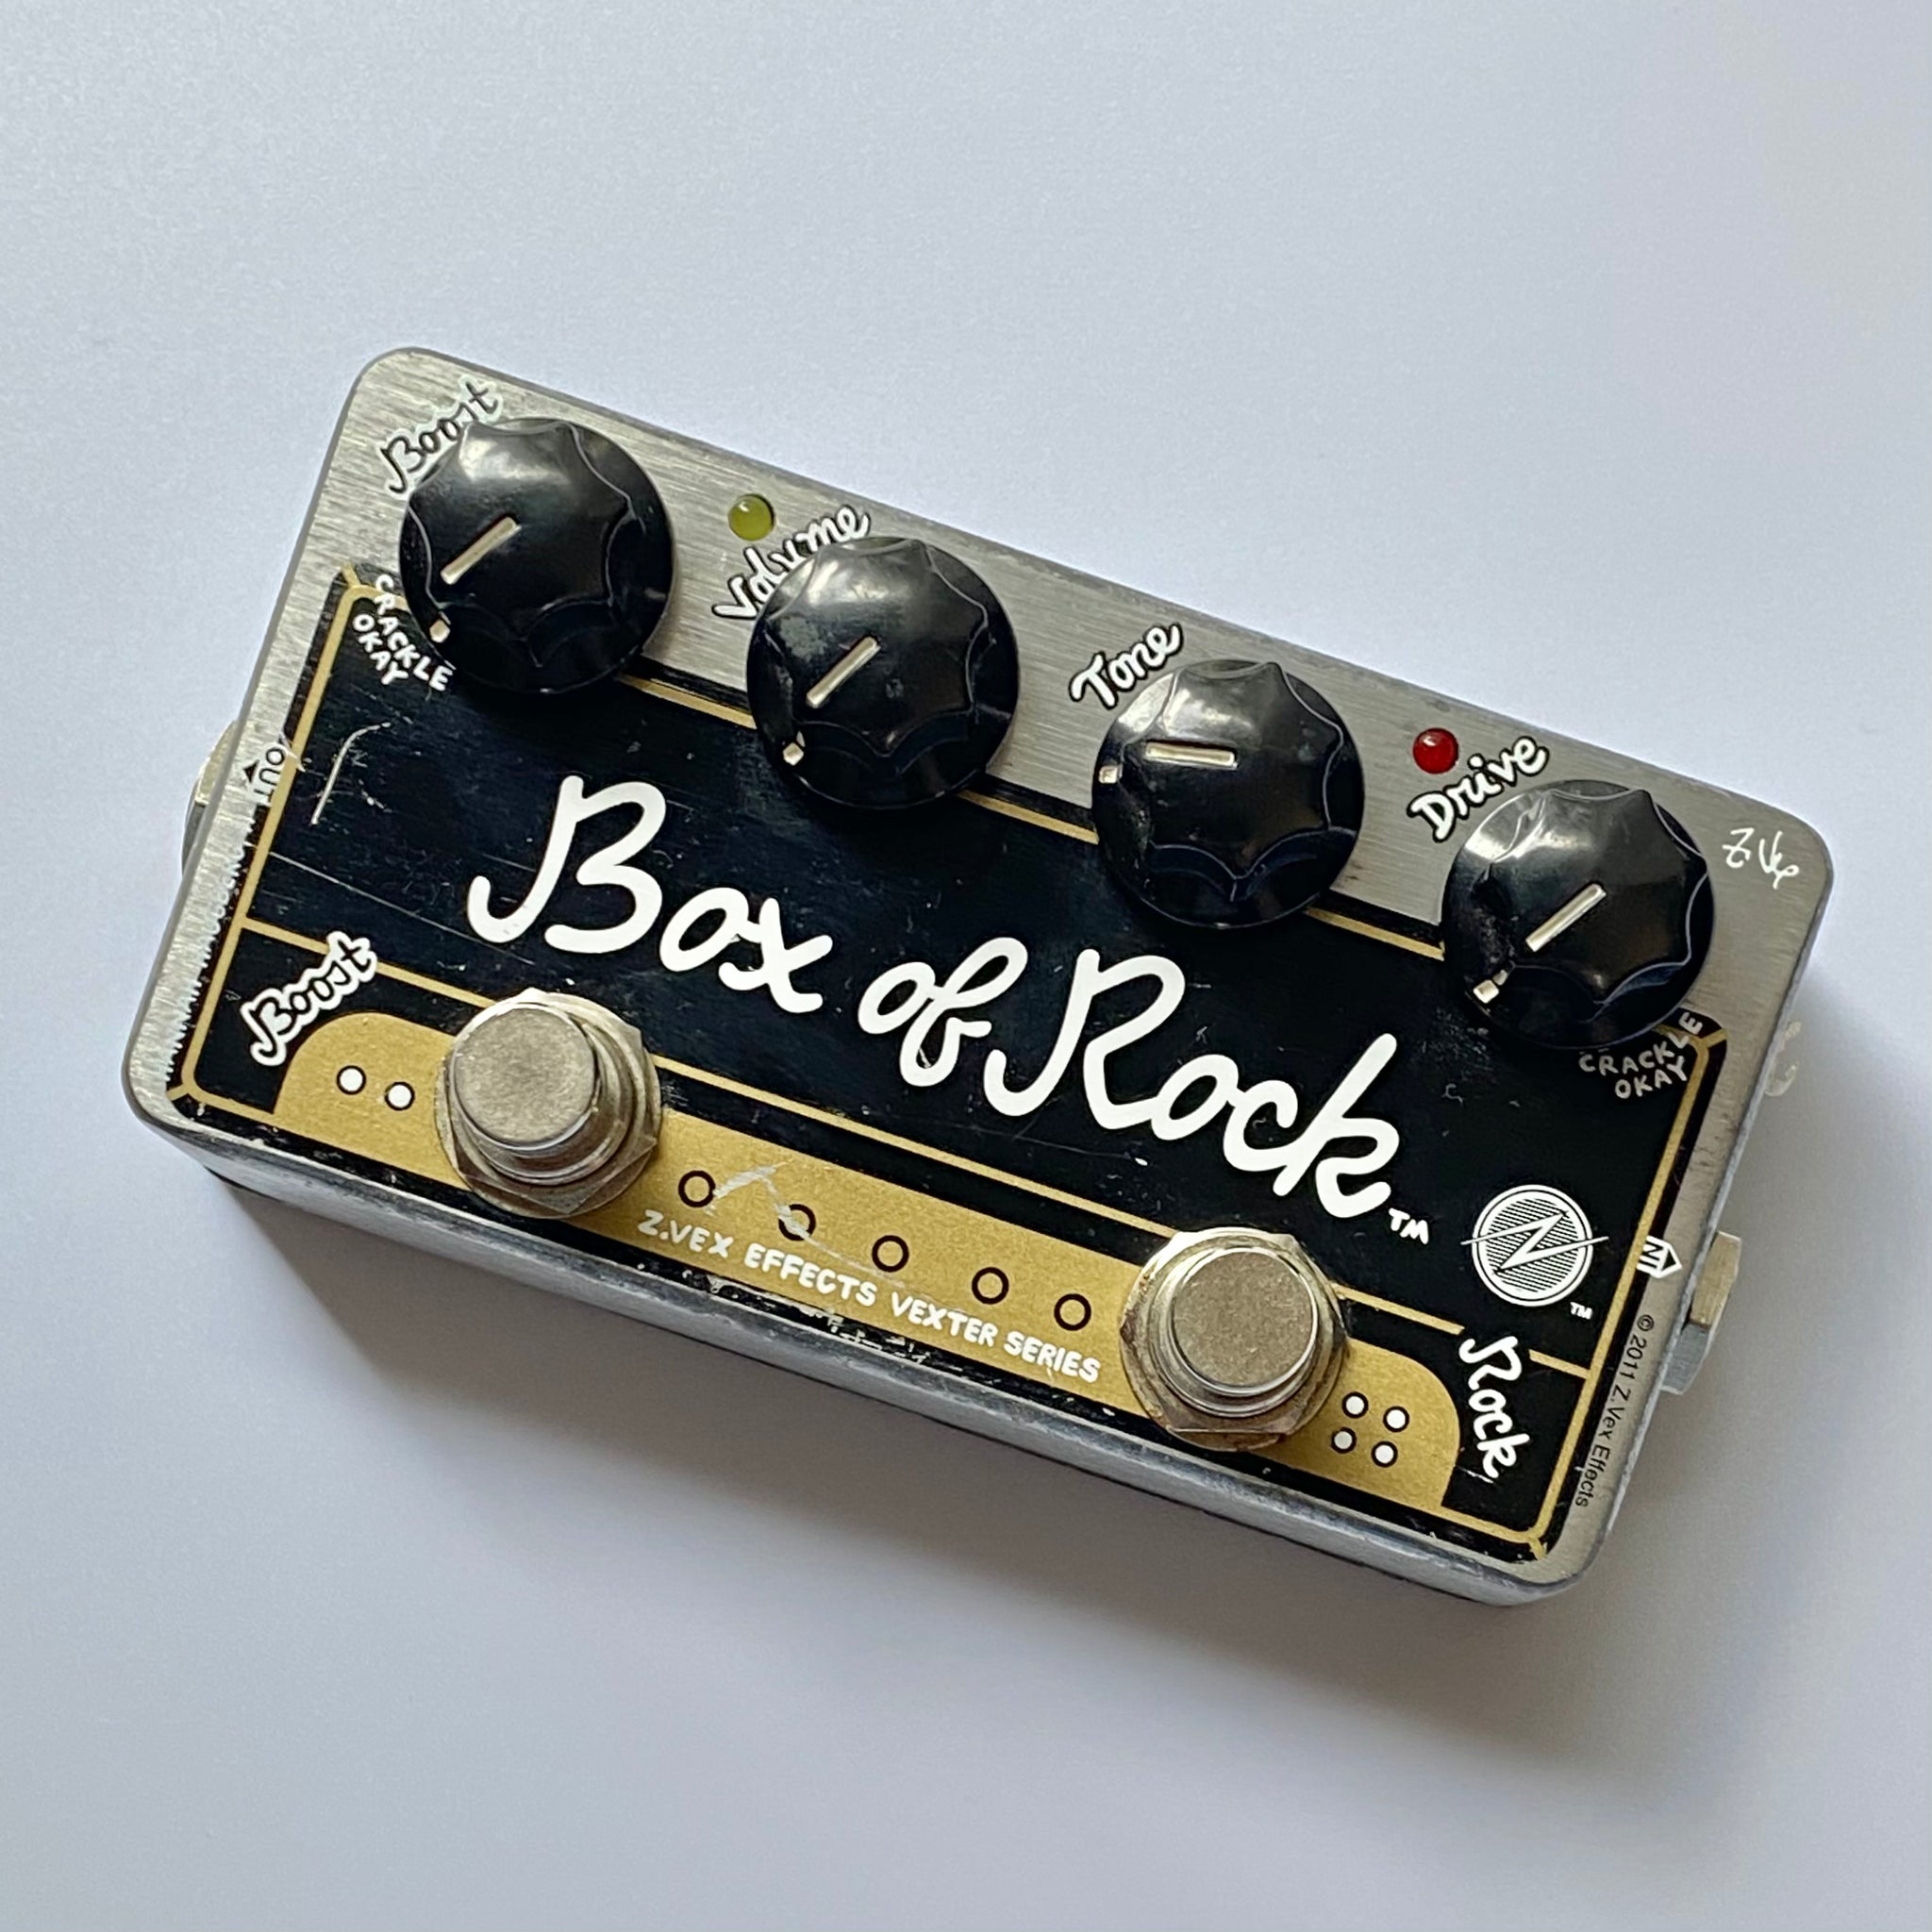 Zvex Box of rockエフェクター - エフェクター